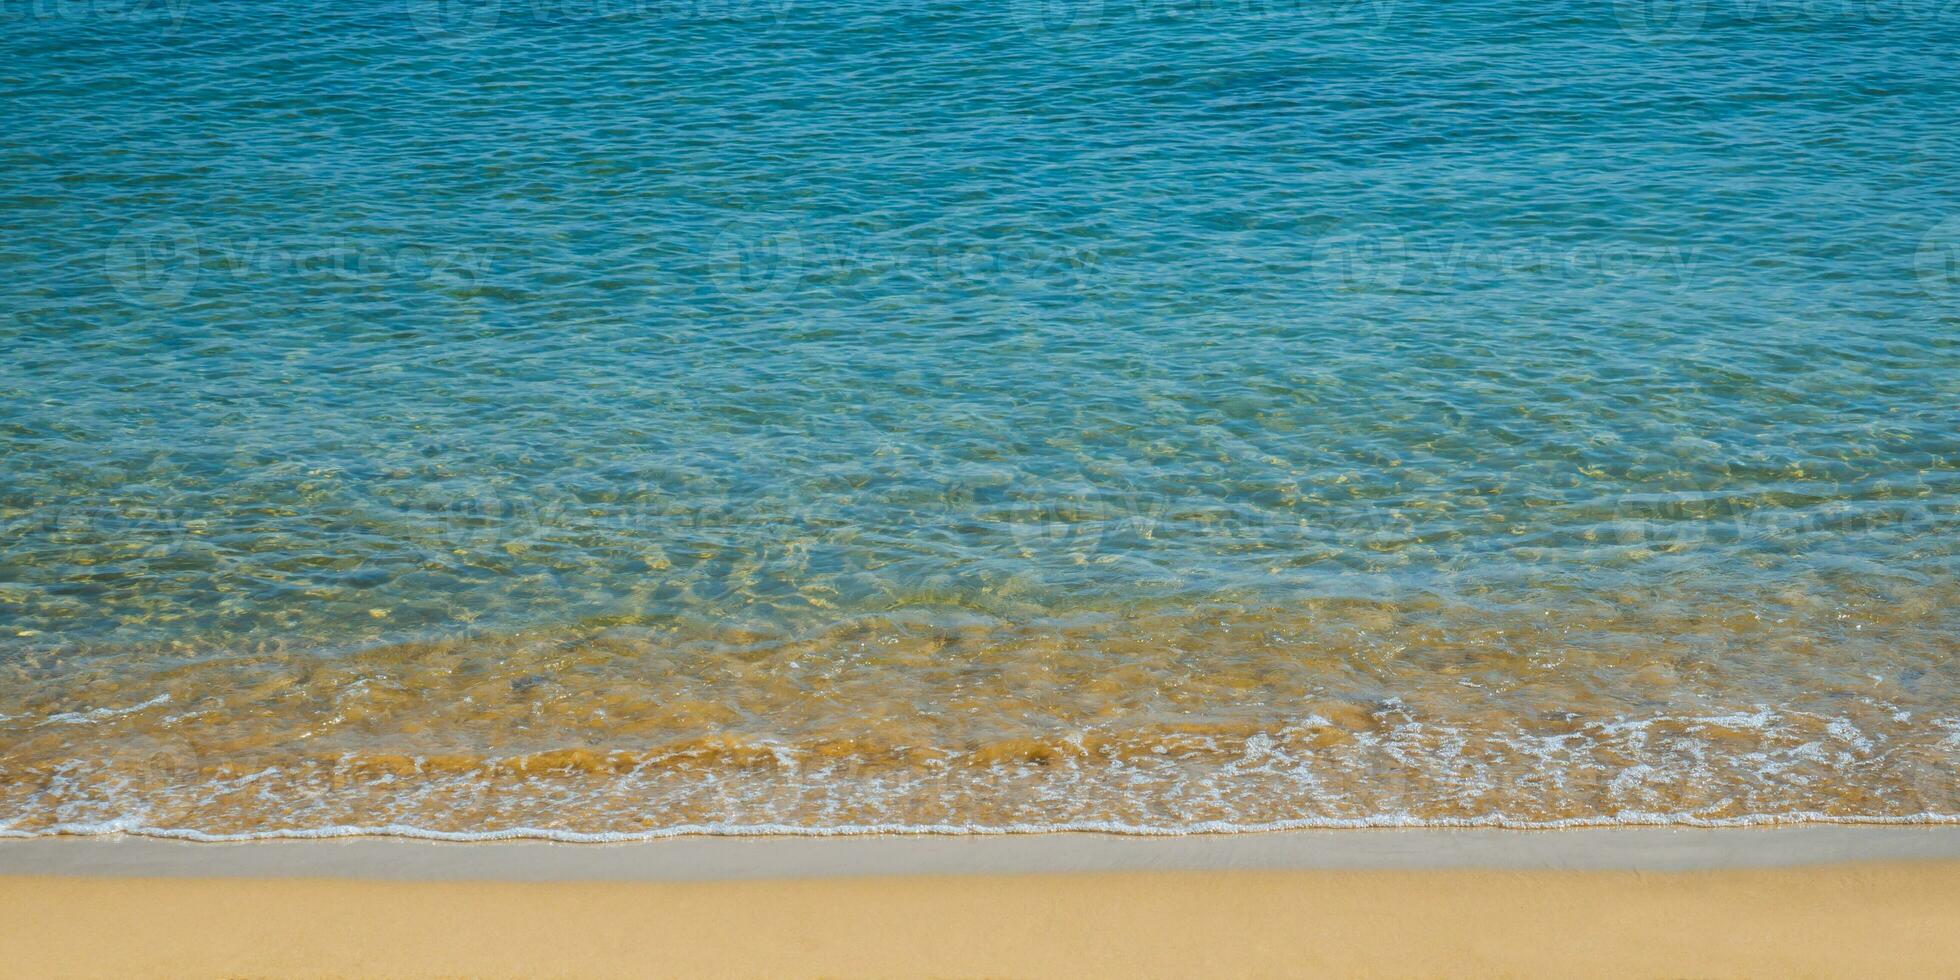 mollusco e bellissimo vuoto spiaggia - sorprendente blu chiaro mare acqua e arancia sabbia foto